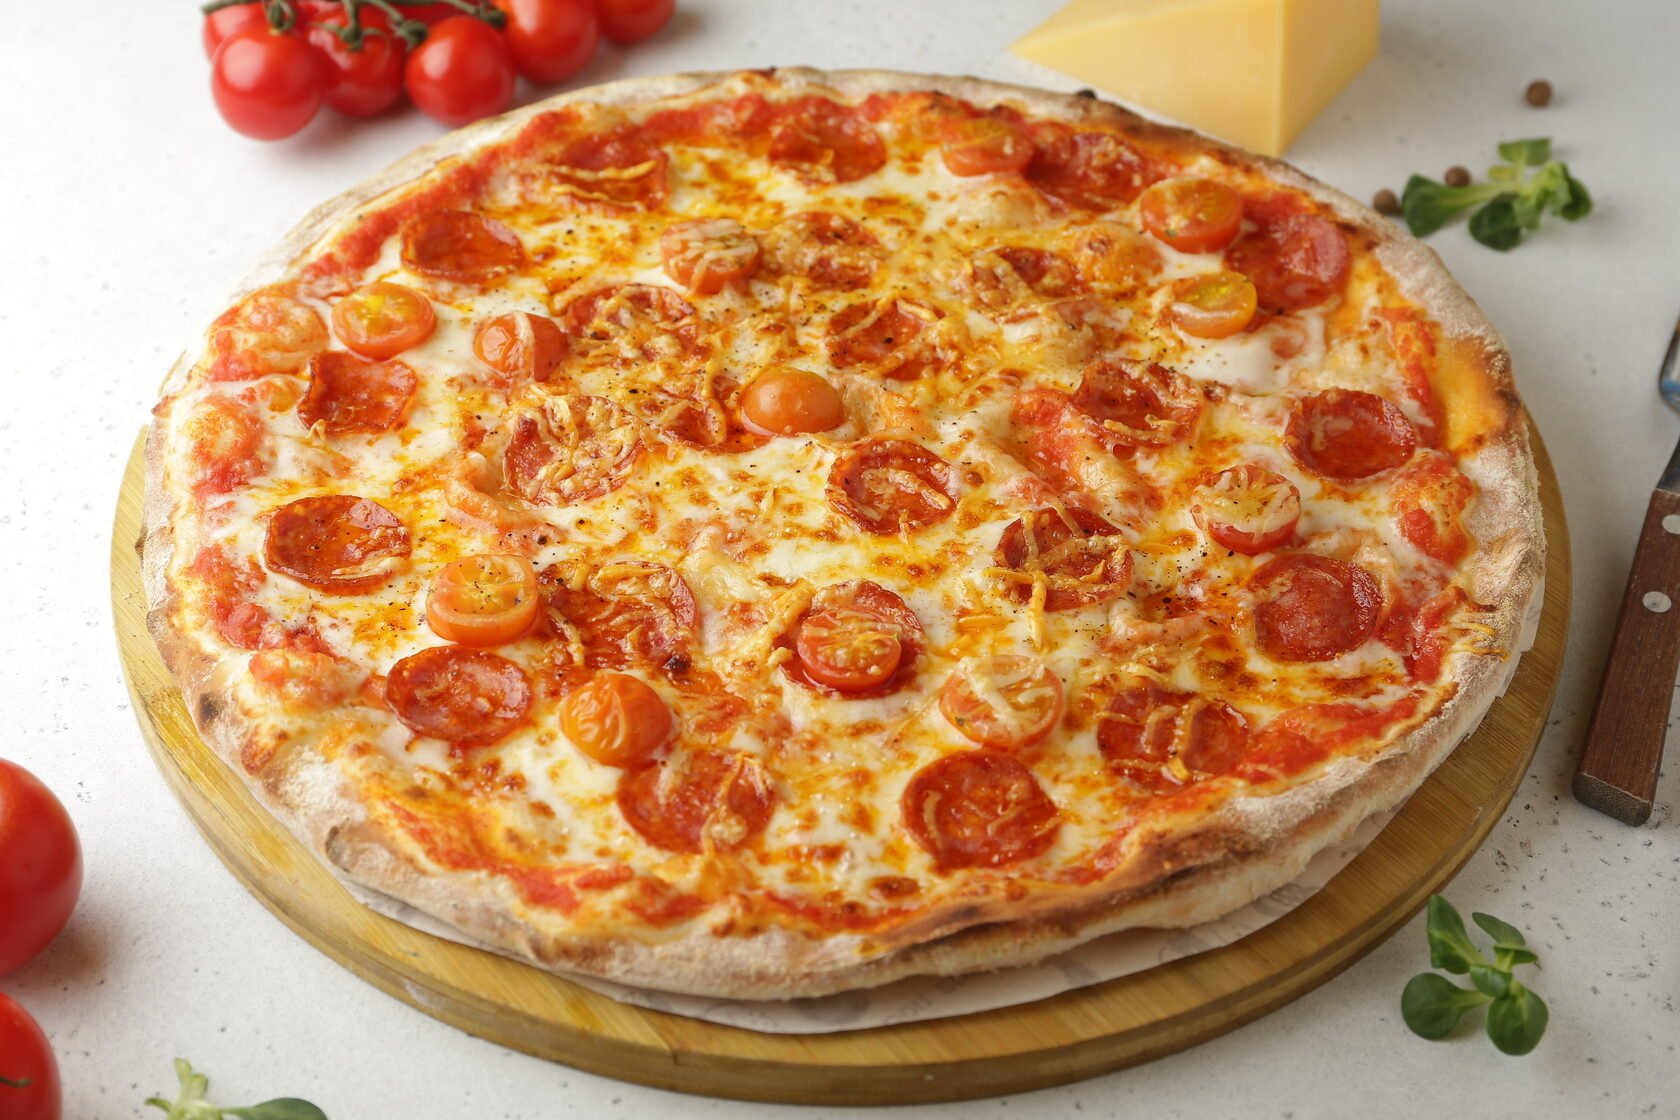 сколько калорий в одном куске пиццы пепперони фото 85